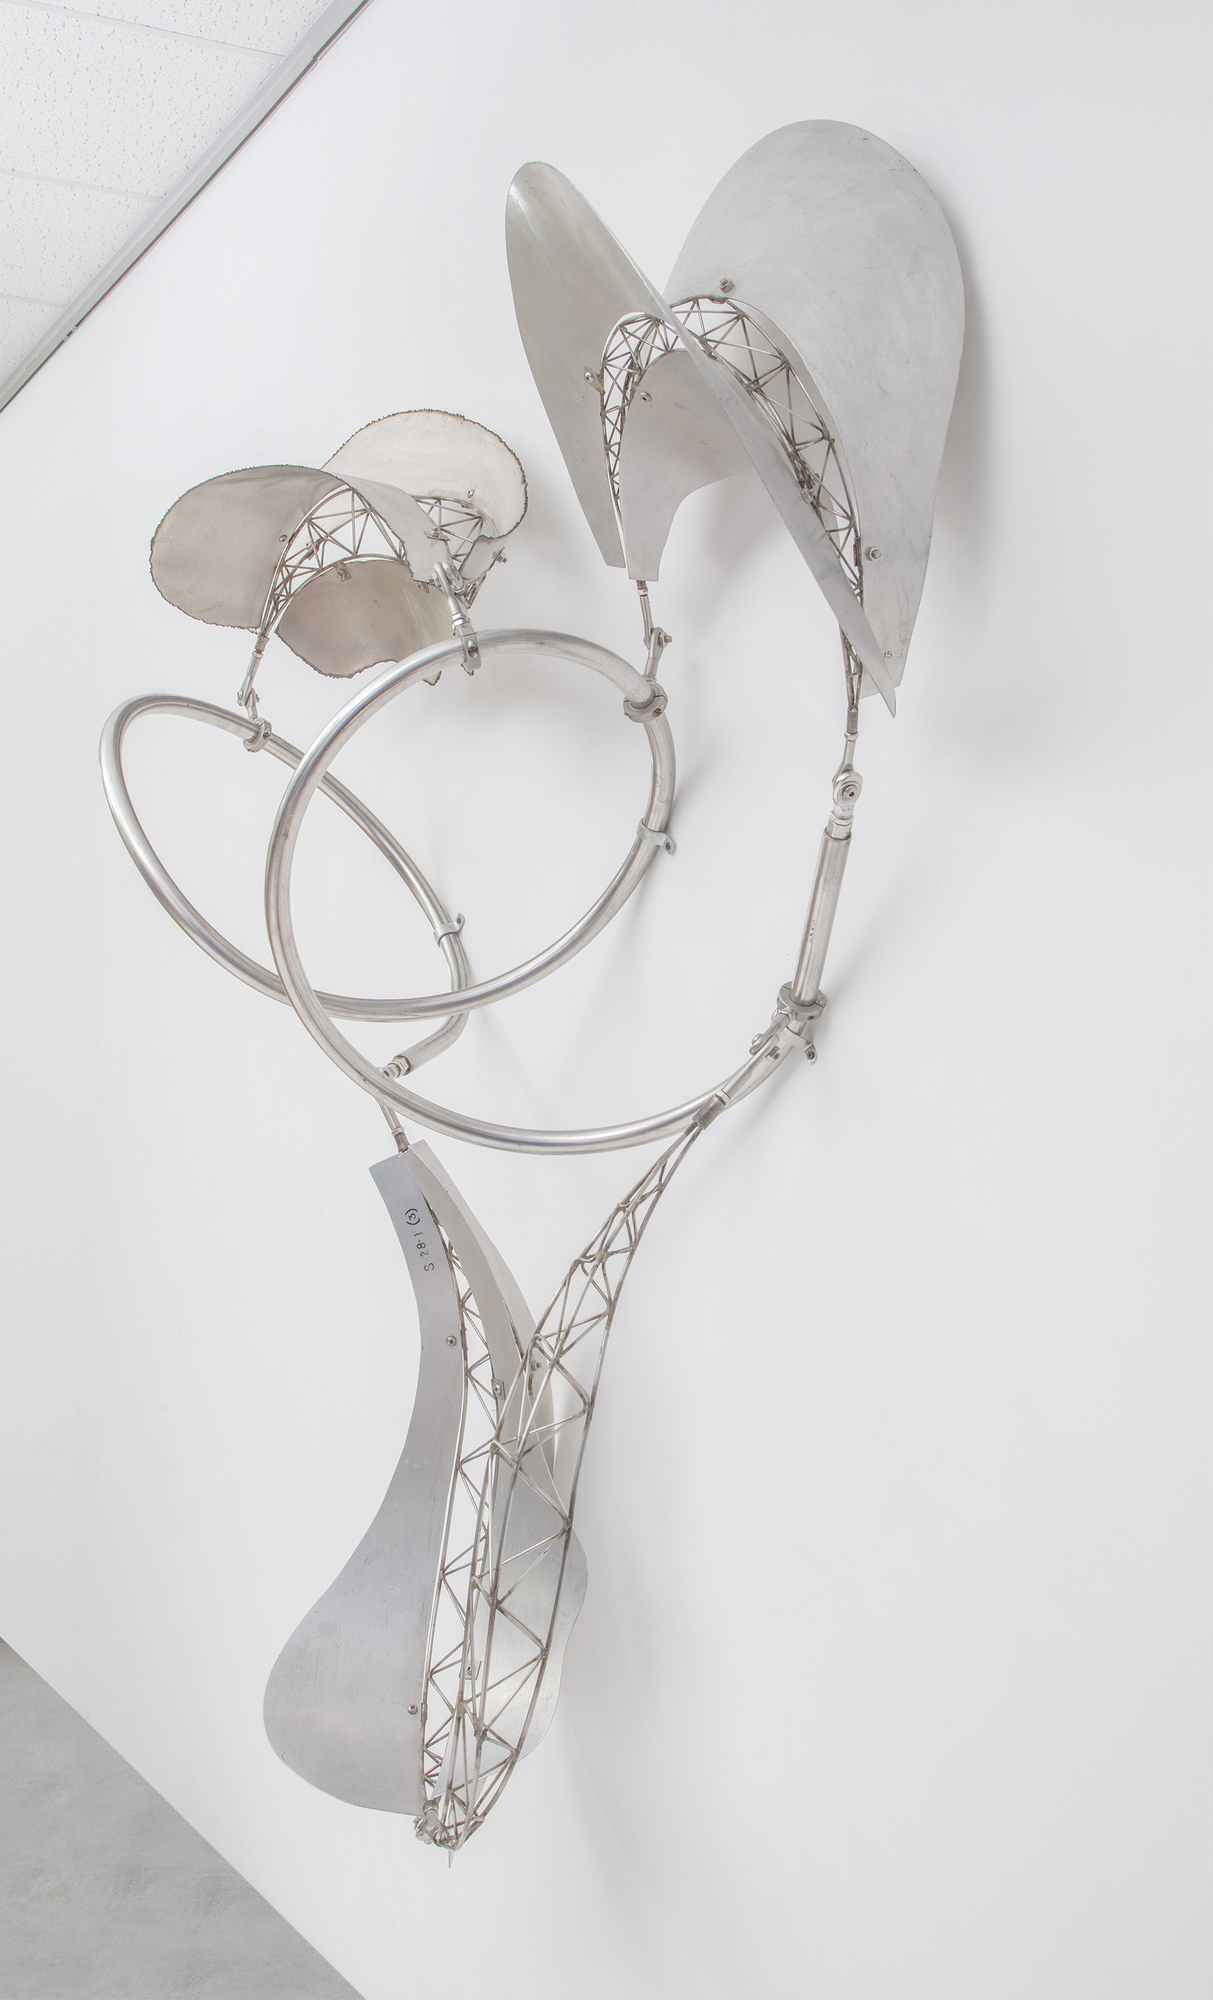 La série de sculptures Bali de Frank Stella se caractérise par des formes flottantes et fluides, s’étendant dans l’espace du spectateur et invitant à l’interaction entre l’objet et son environnement. Le « dadap », un type d’arbre associé à la croissance et à la signification rituelle dans la culture balinaise, reflète la nature organique et dynamique des sculptures de Stella. En passant de l’acier inoxydable et de l’aluminium au bambou, Stella a préservé la nature essentielle de l’esthétique balinaise qui exalte des formes organiques, fluides et dynamiques dans leur espace. Dadap présente une continuité dans l’exploration thématique de Stella où l’esprit de son travail transcende la matérialité. Le métal offre une texture, une réflectivité et une interaction différentes avec la lumière et l’espace, tout en adhérant aux principes du mouvement et de l’interactivité. Il s’agit d’un transfert créatif de forme et de concept à travers différents médiums, en conservant l’esprit de l’inspiration initiale tout en permettant aux propriétés du nouveau matériau d’exprimer ces idées dans un nouveau contexte.